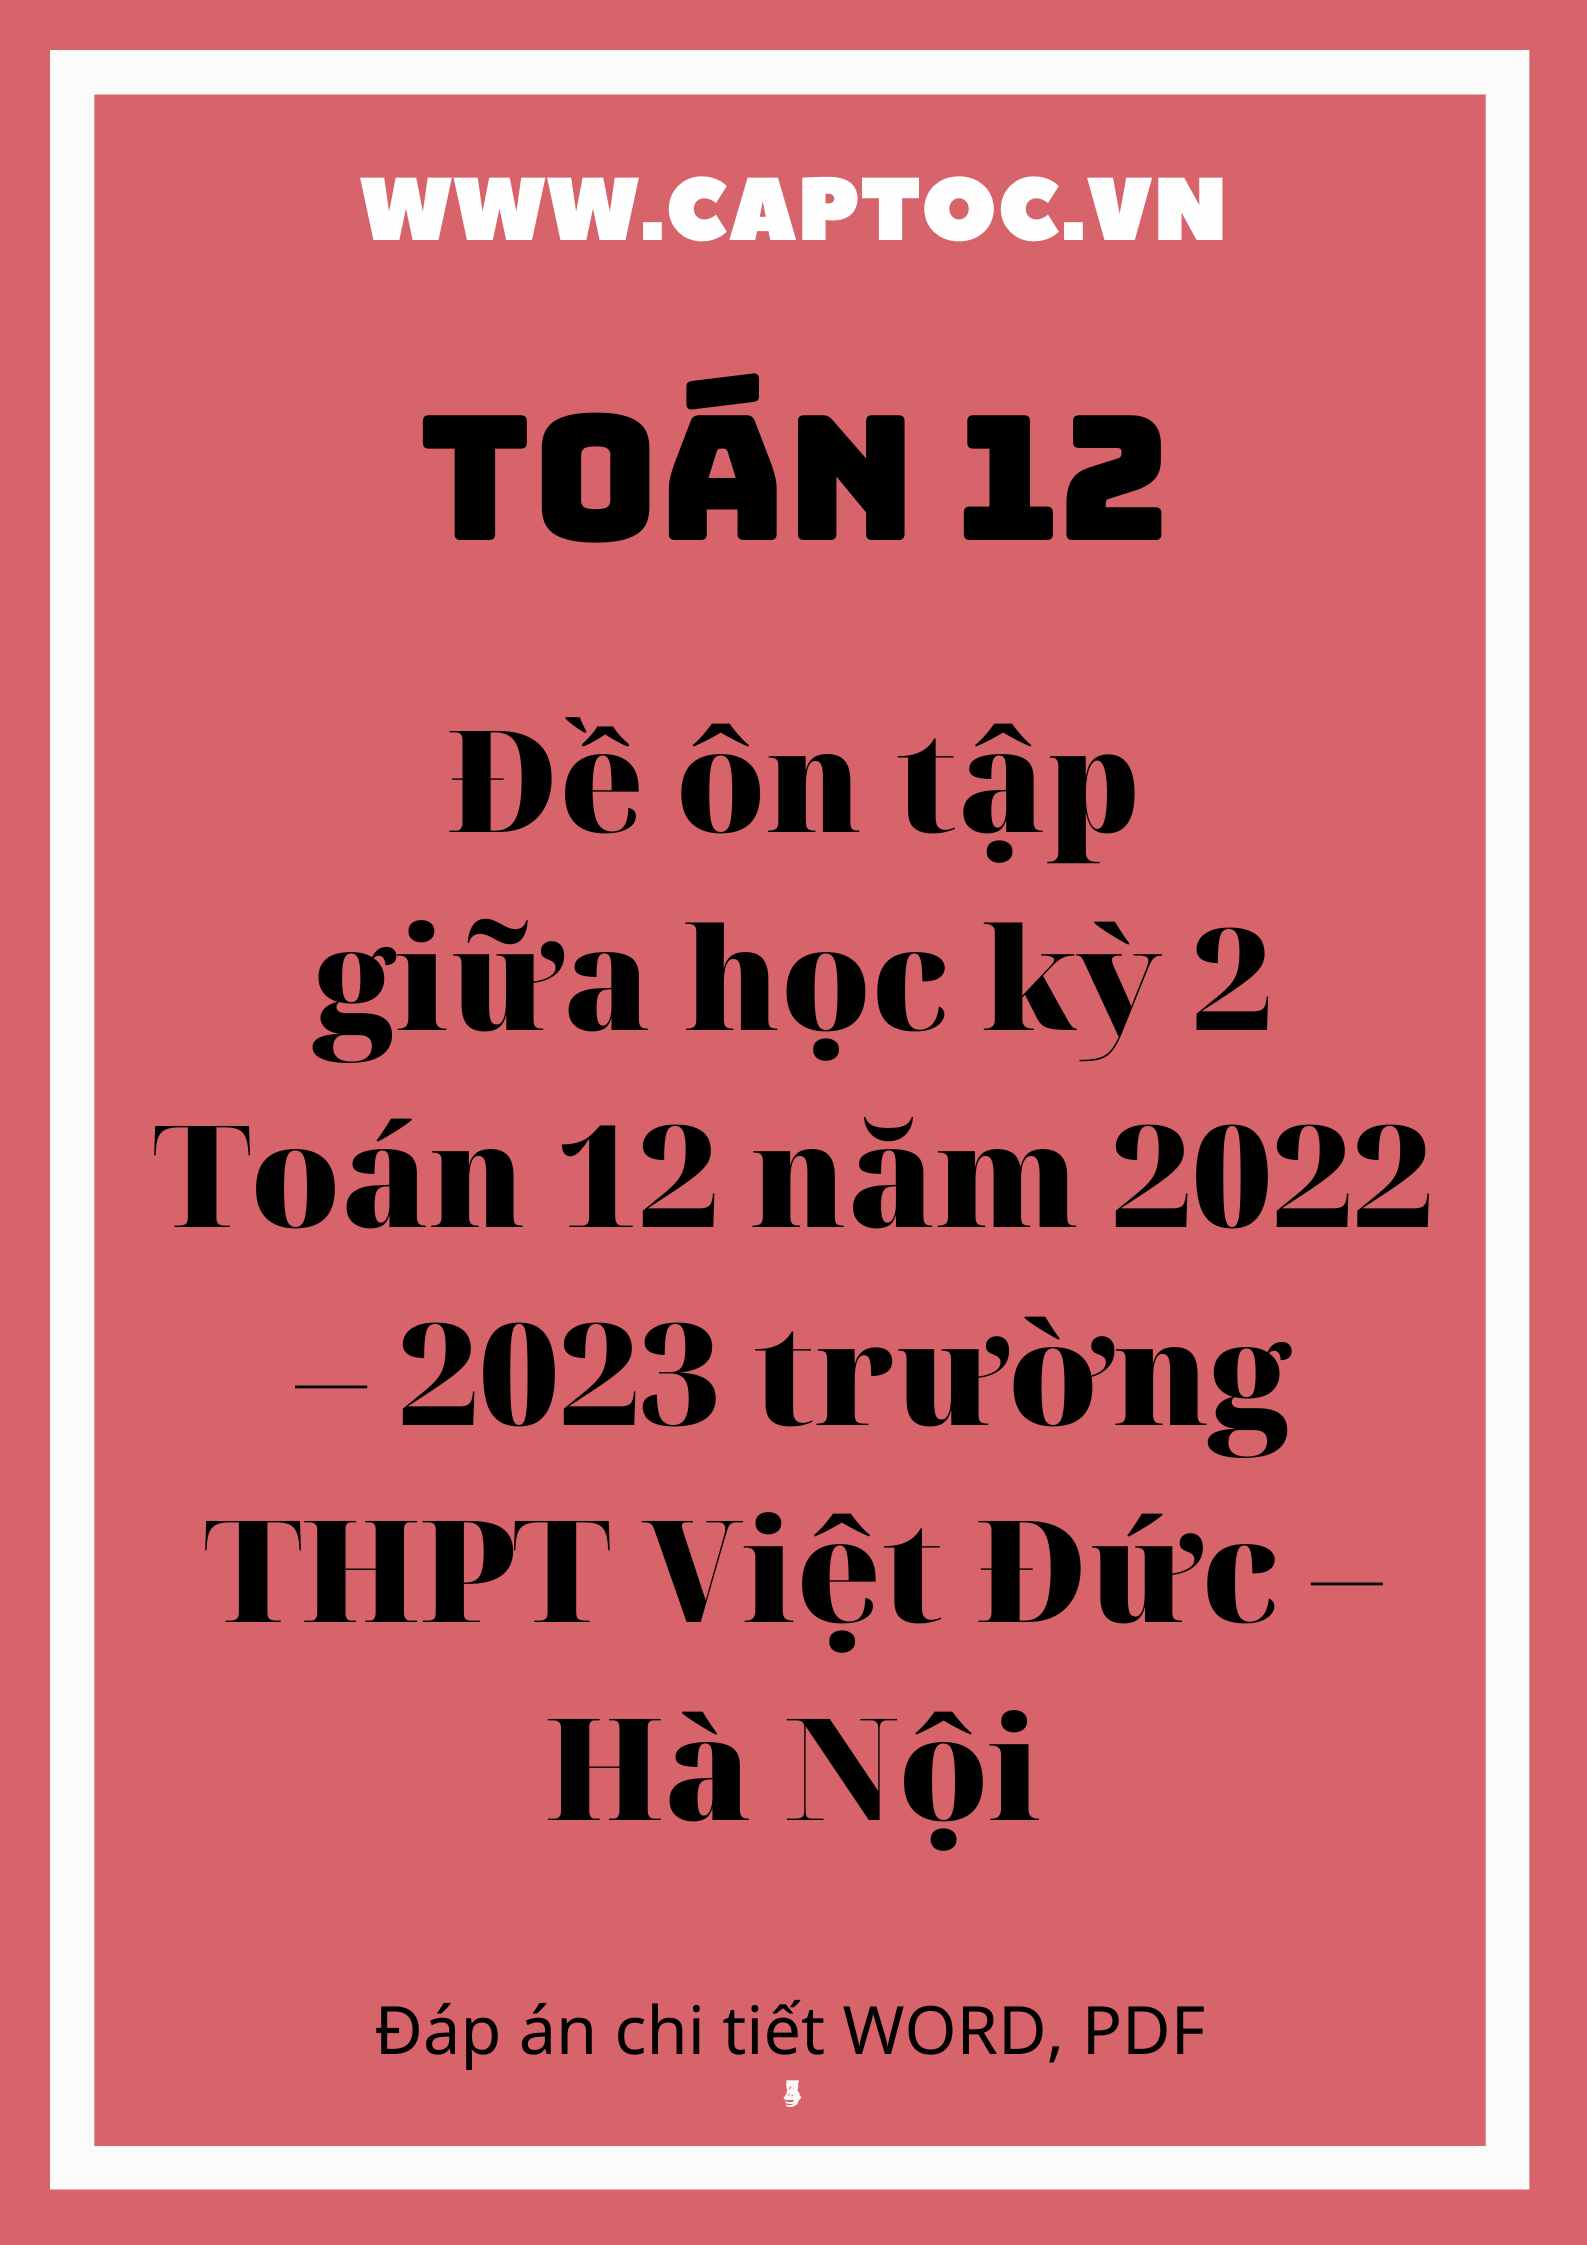 Đề ôn tập giữa học kỳ 2 Toán 12 năm 2022 – 2023 trường THPT Việt Đức